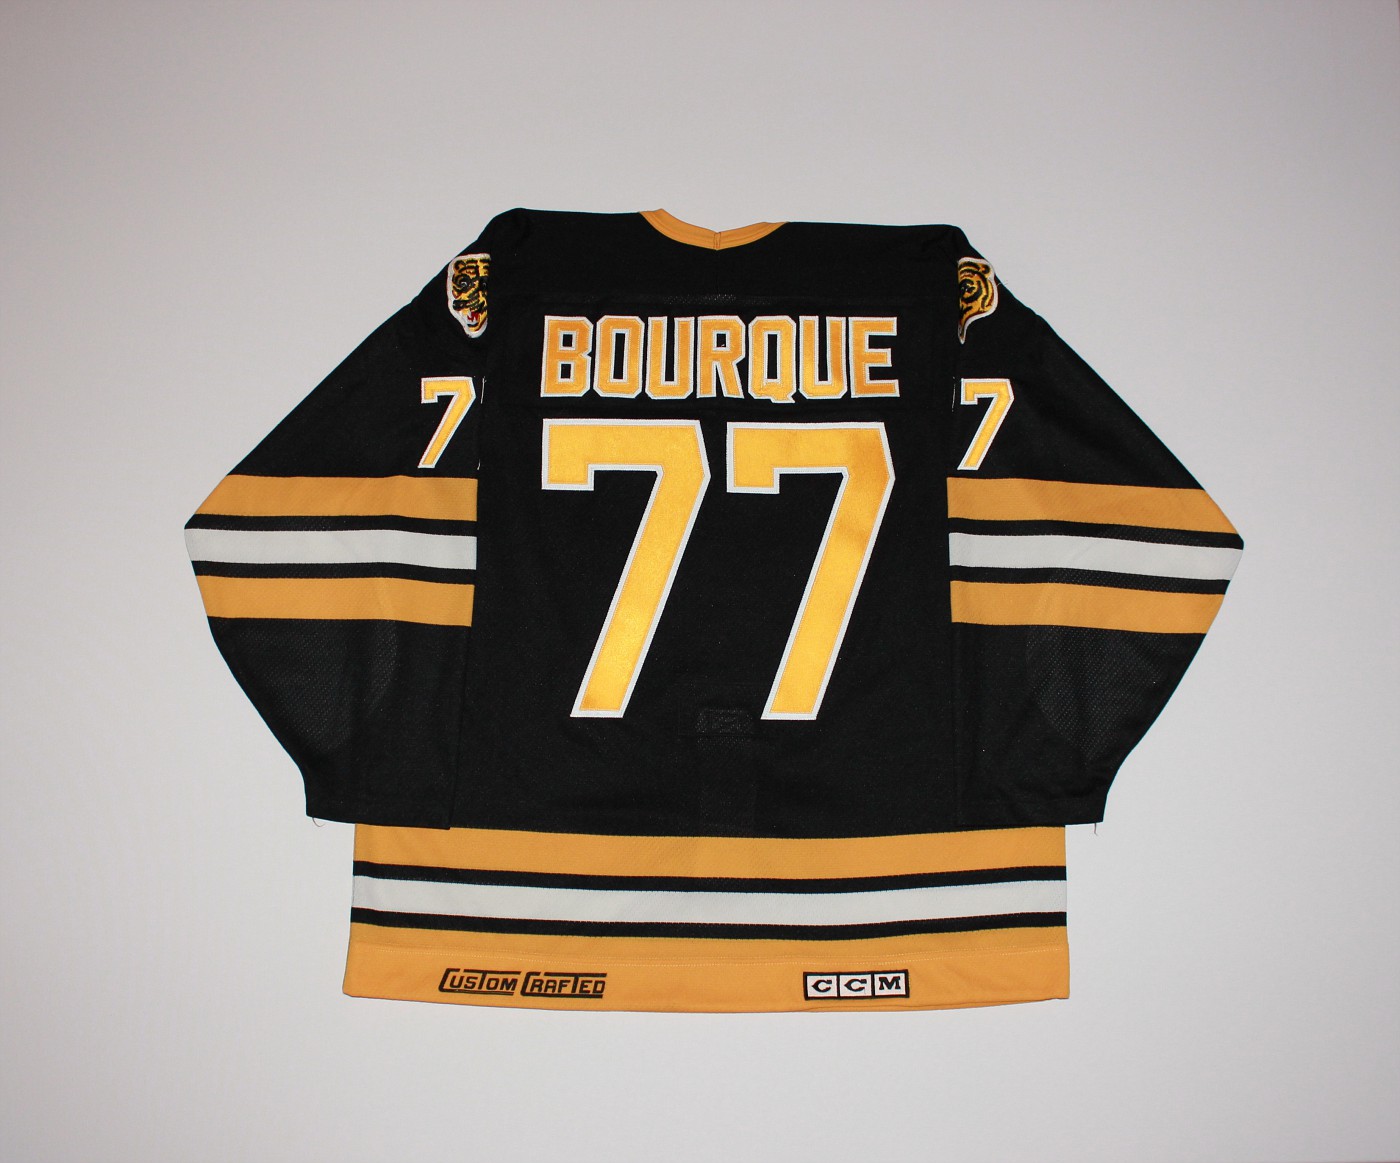 Bruins198889RoadBourquerear-vi.jpg